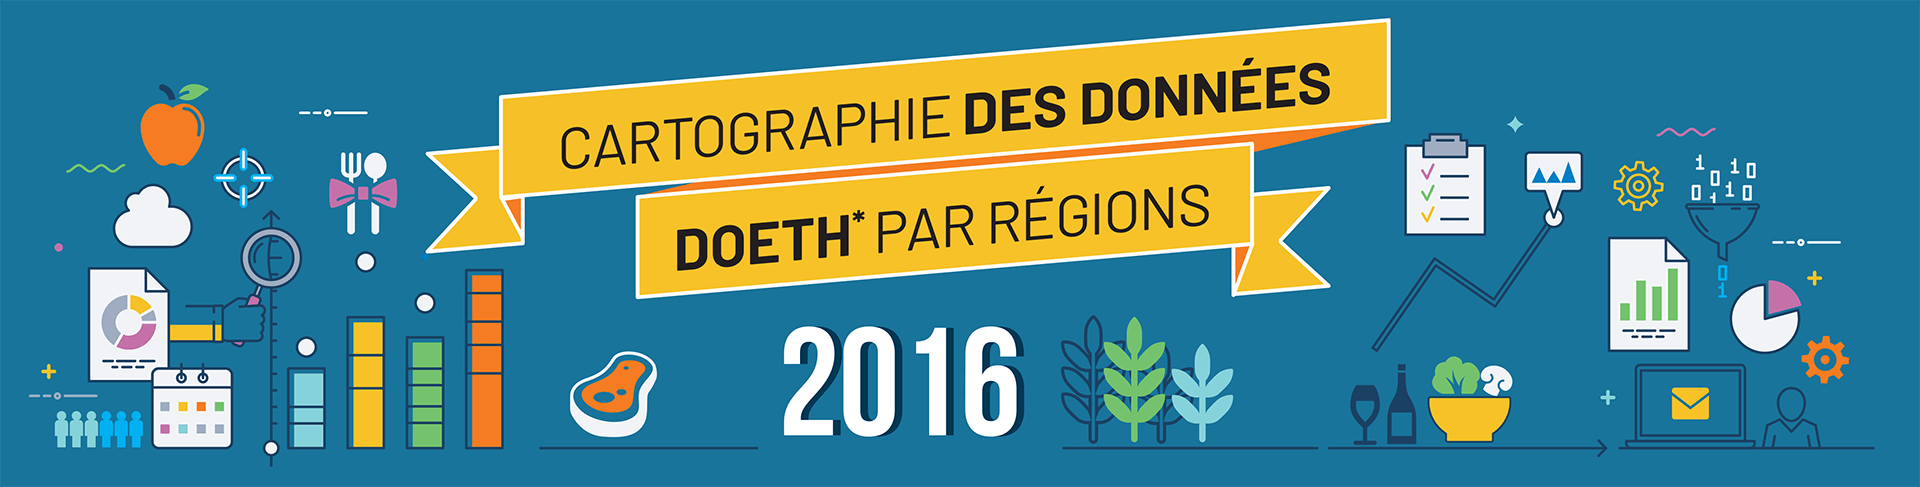 Cartographie des données DOETH* par régions 2016